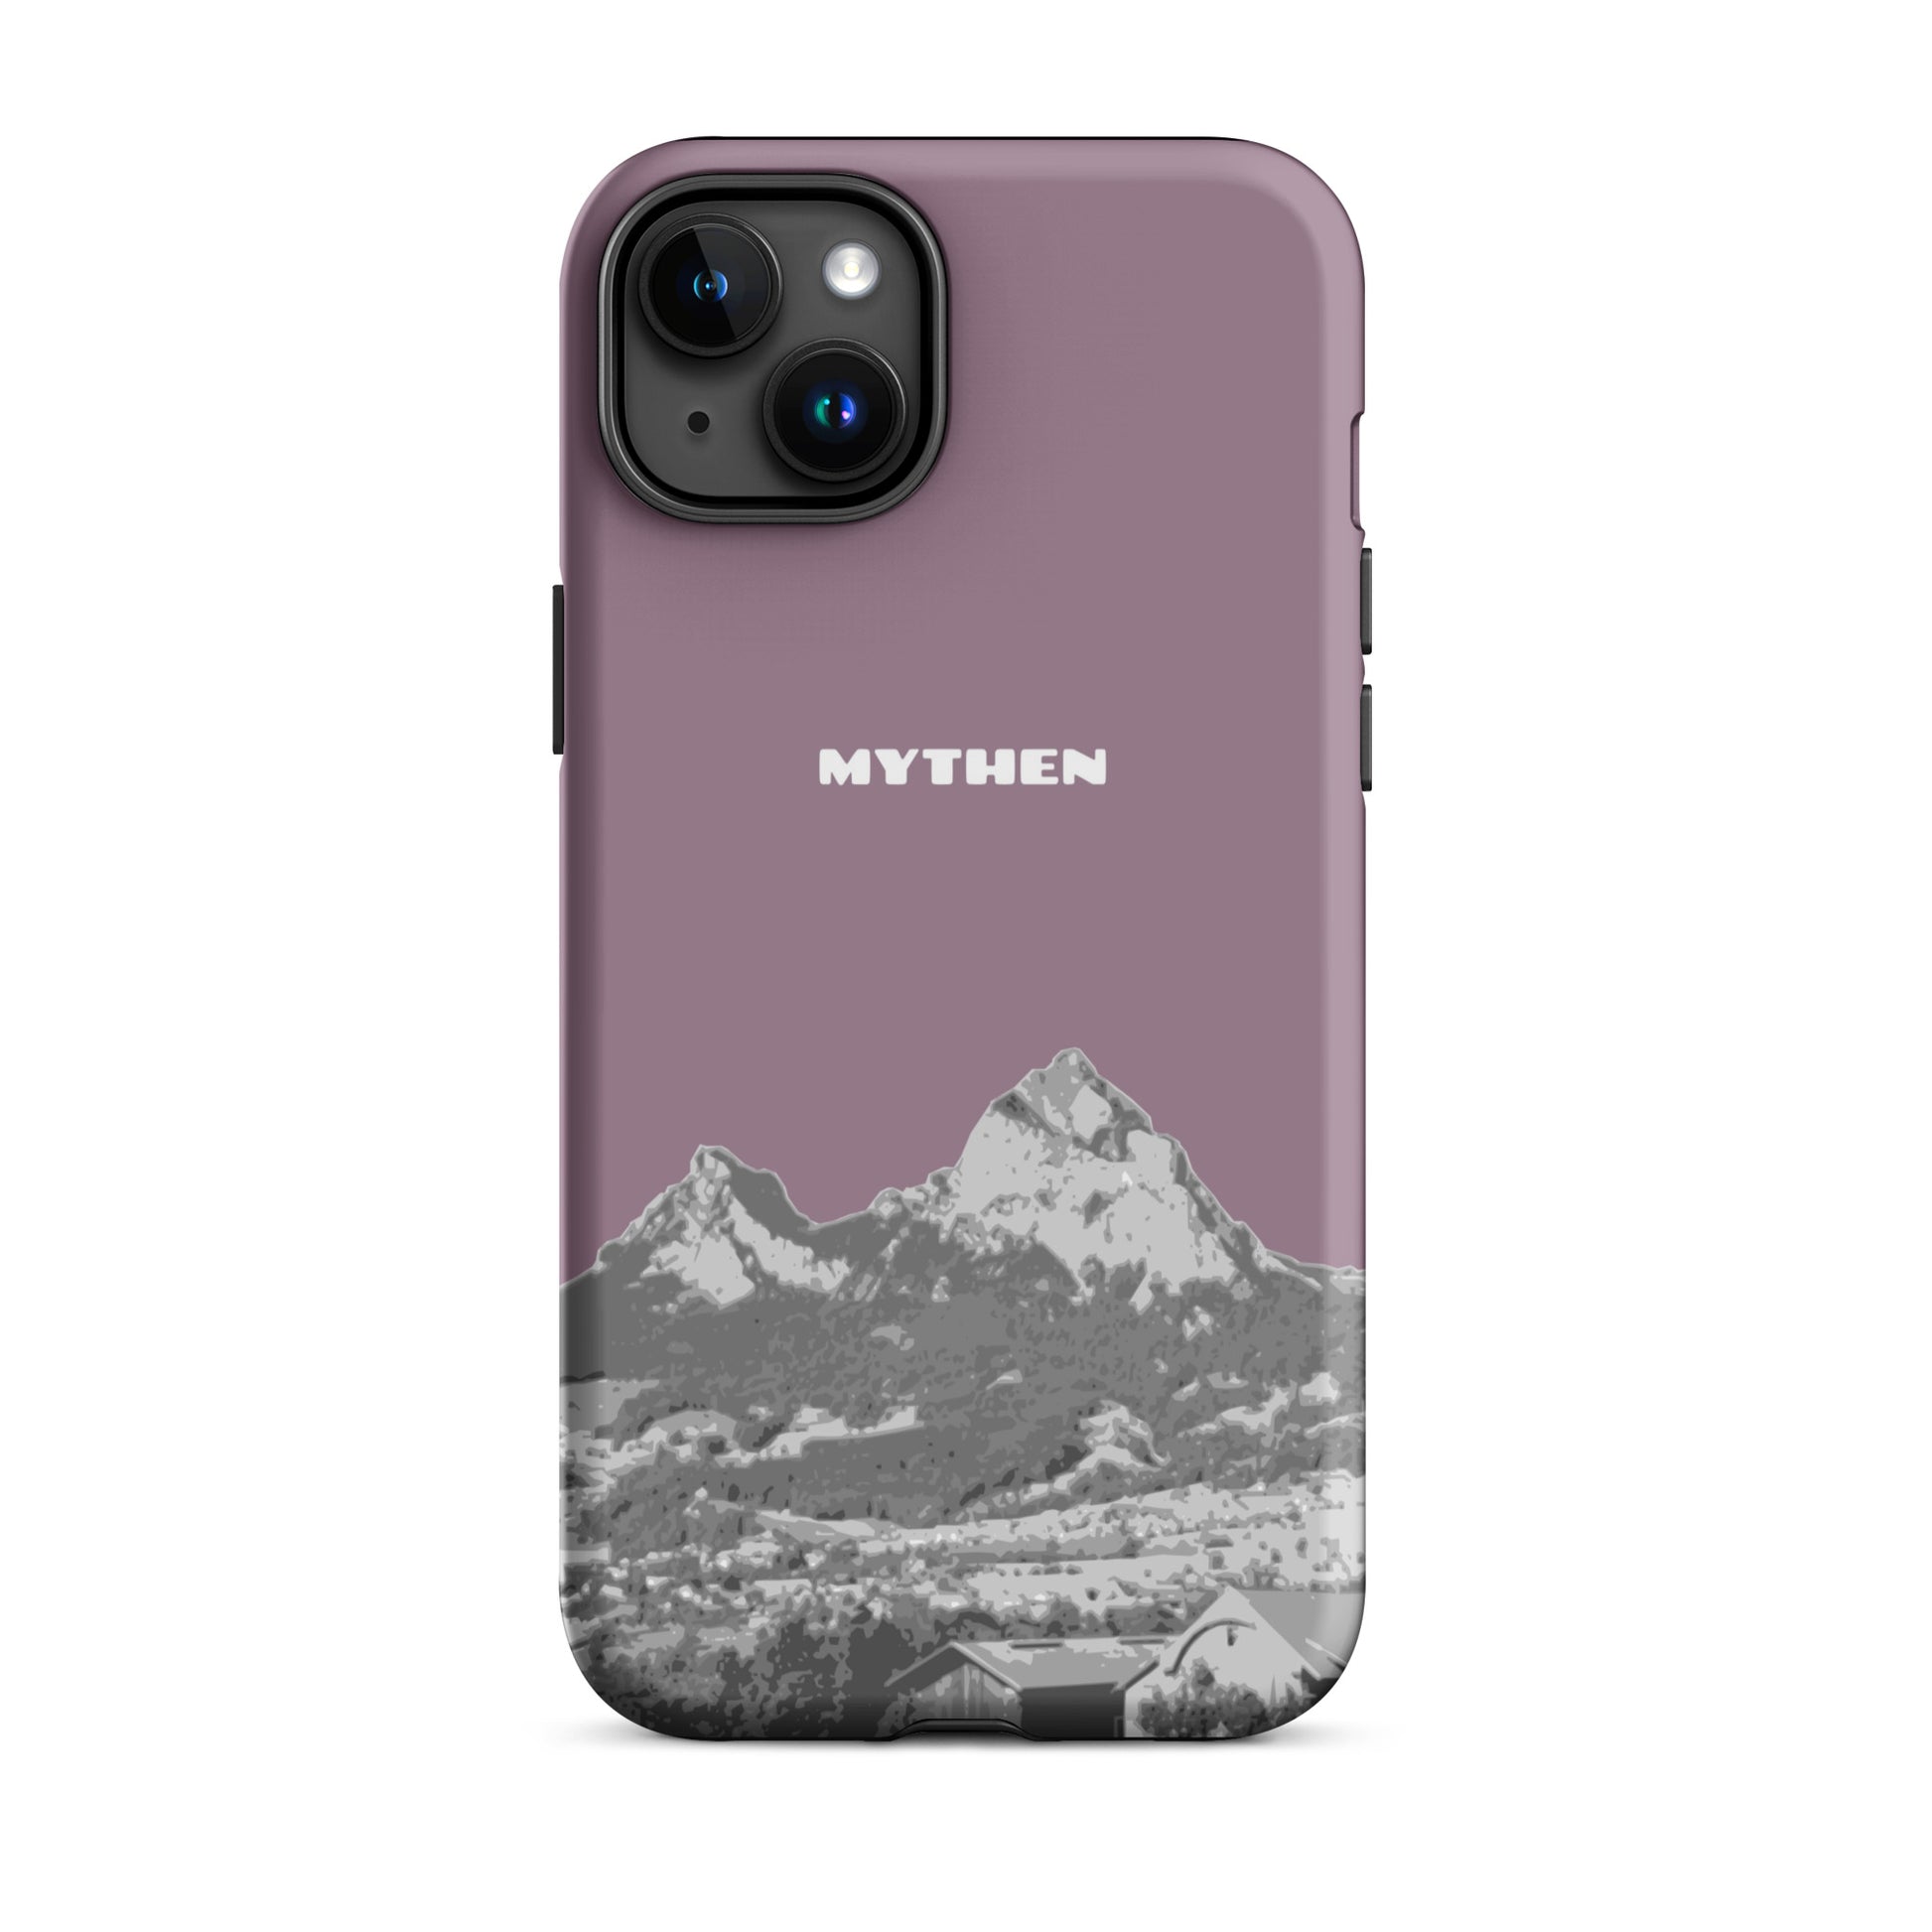 Hülle für das iPhone 15 Plus von Apple in der Farbe Pastellviolett, die den Grossen Mythen und den Kleinen Mythen bei Schwyz zeigt. 